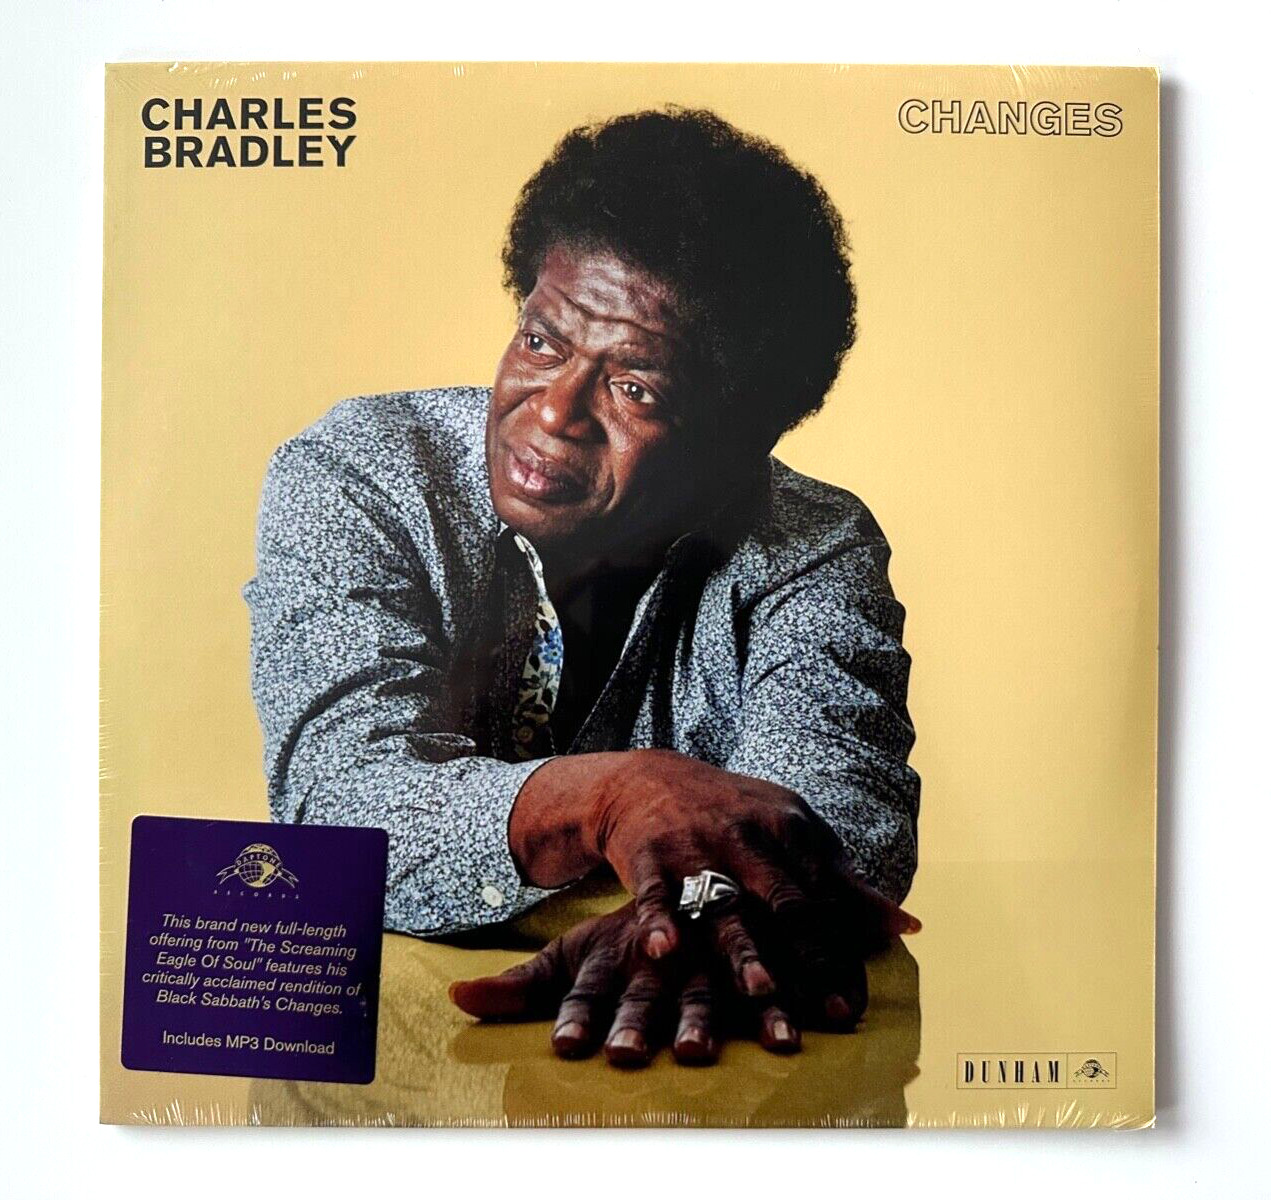 CHARLES BRADLEY - CHANGES - VINYL LP (w/ MP3 DOWNLOAD) OG PRESSING - DAP-041